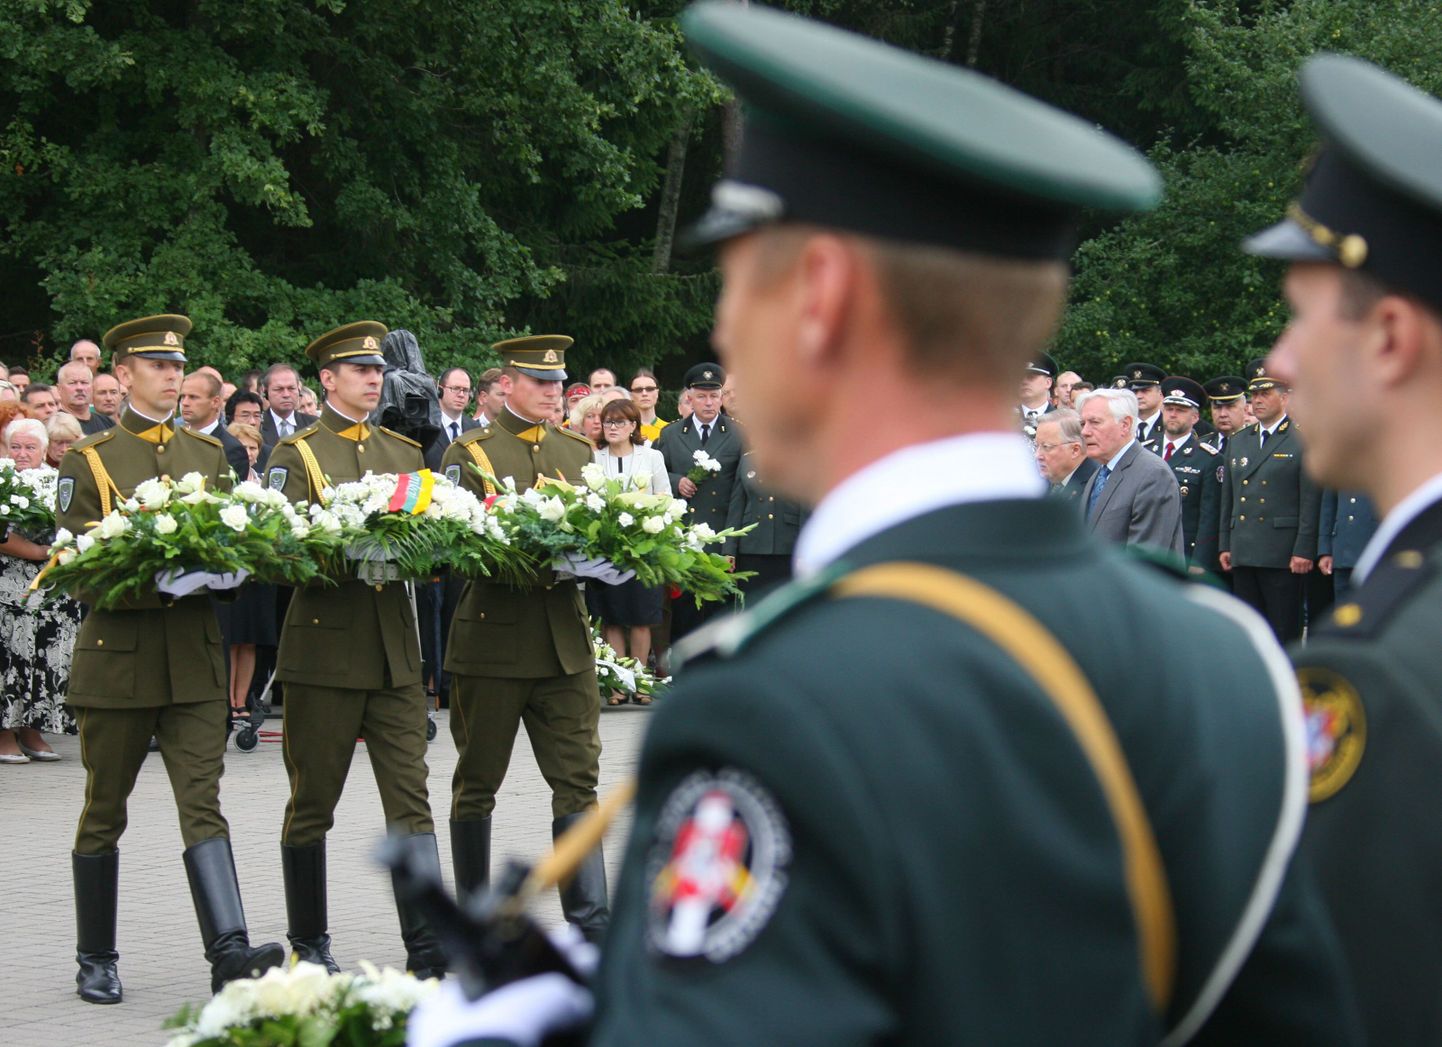 Medininkai veresauna 20. aastapäeva mälestusüritus Leedus